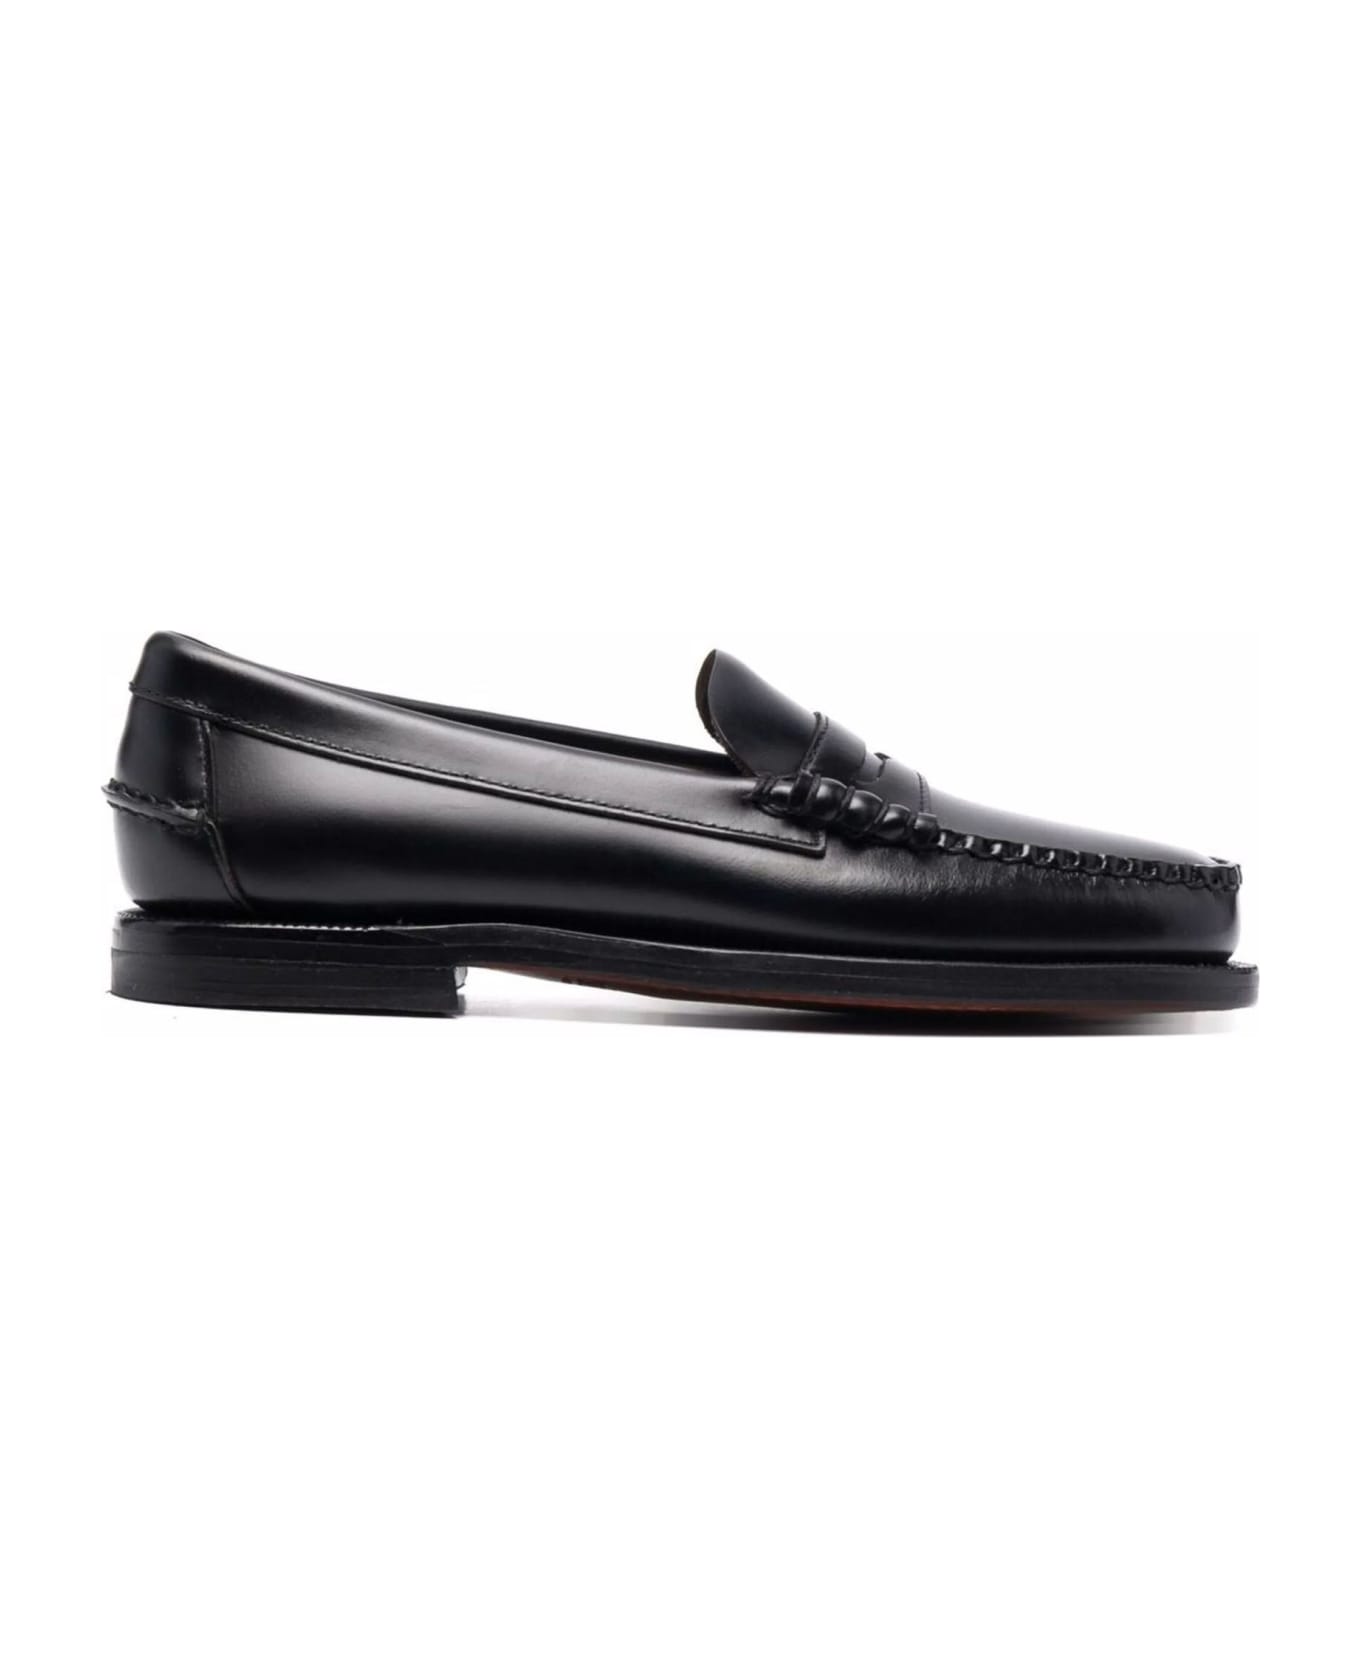 Sebago Black Leather Loafers - Black フラットシューズ